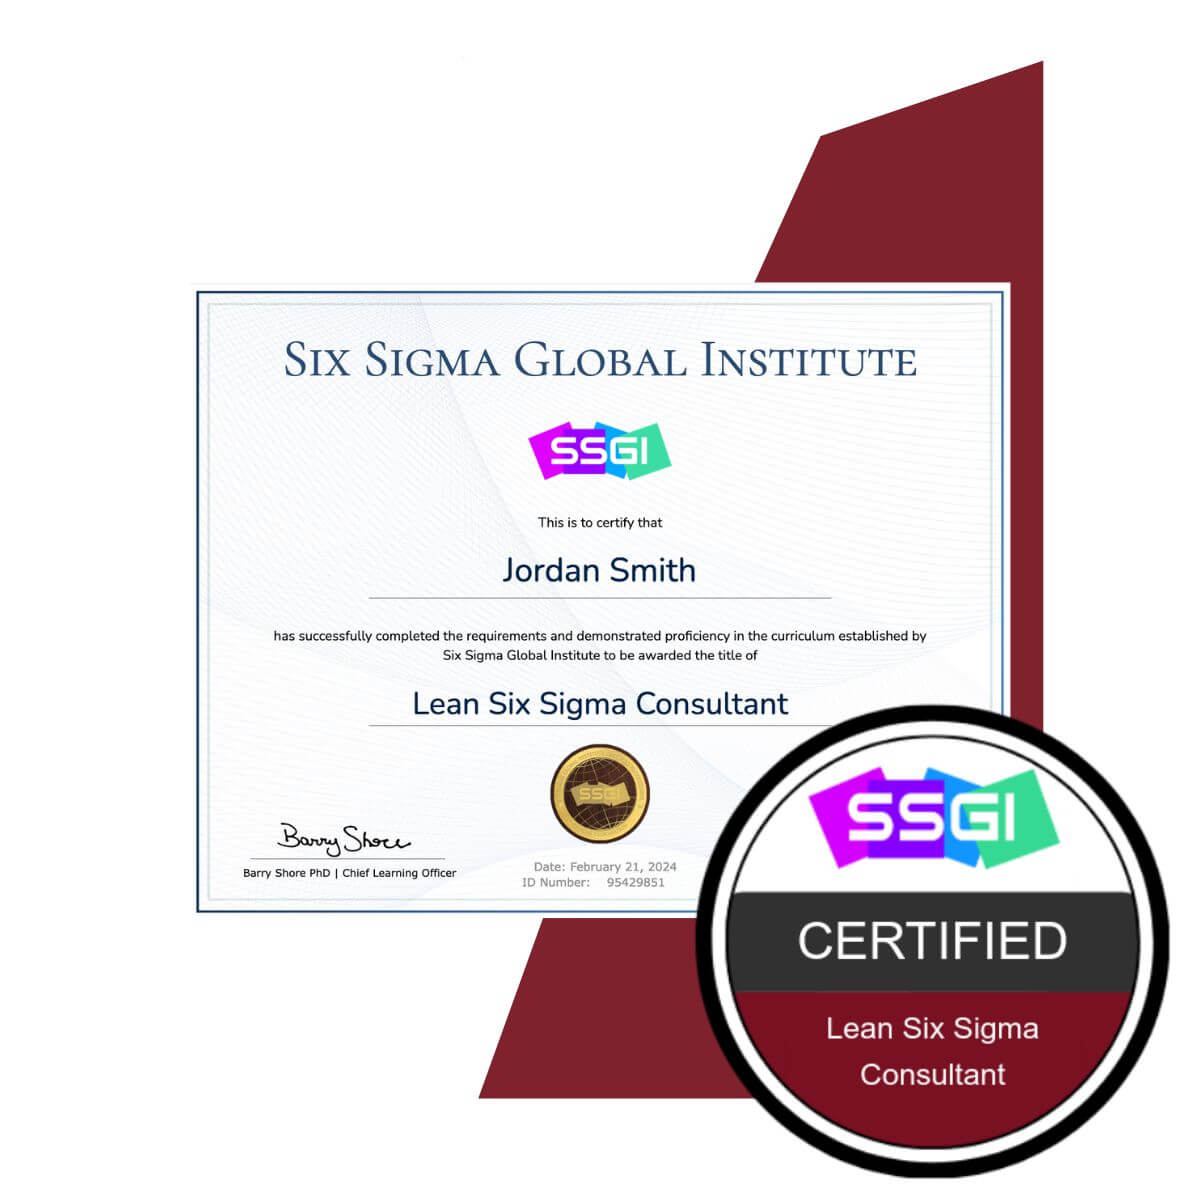 SSGI Lean Six Sigma Consultant